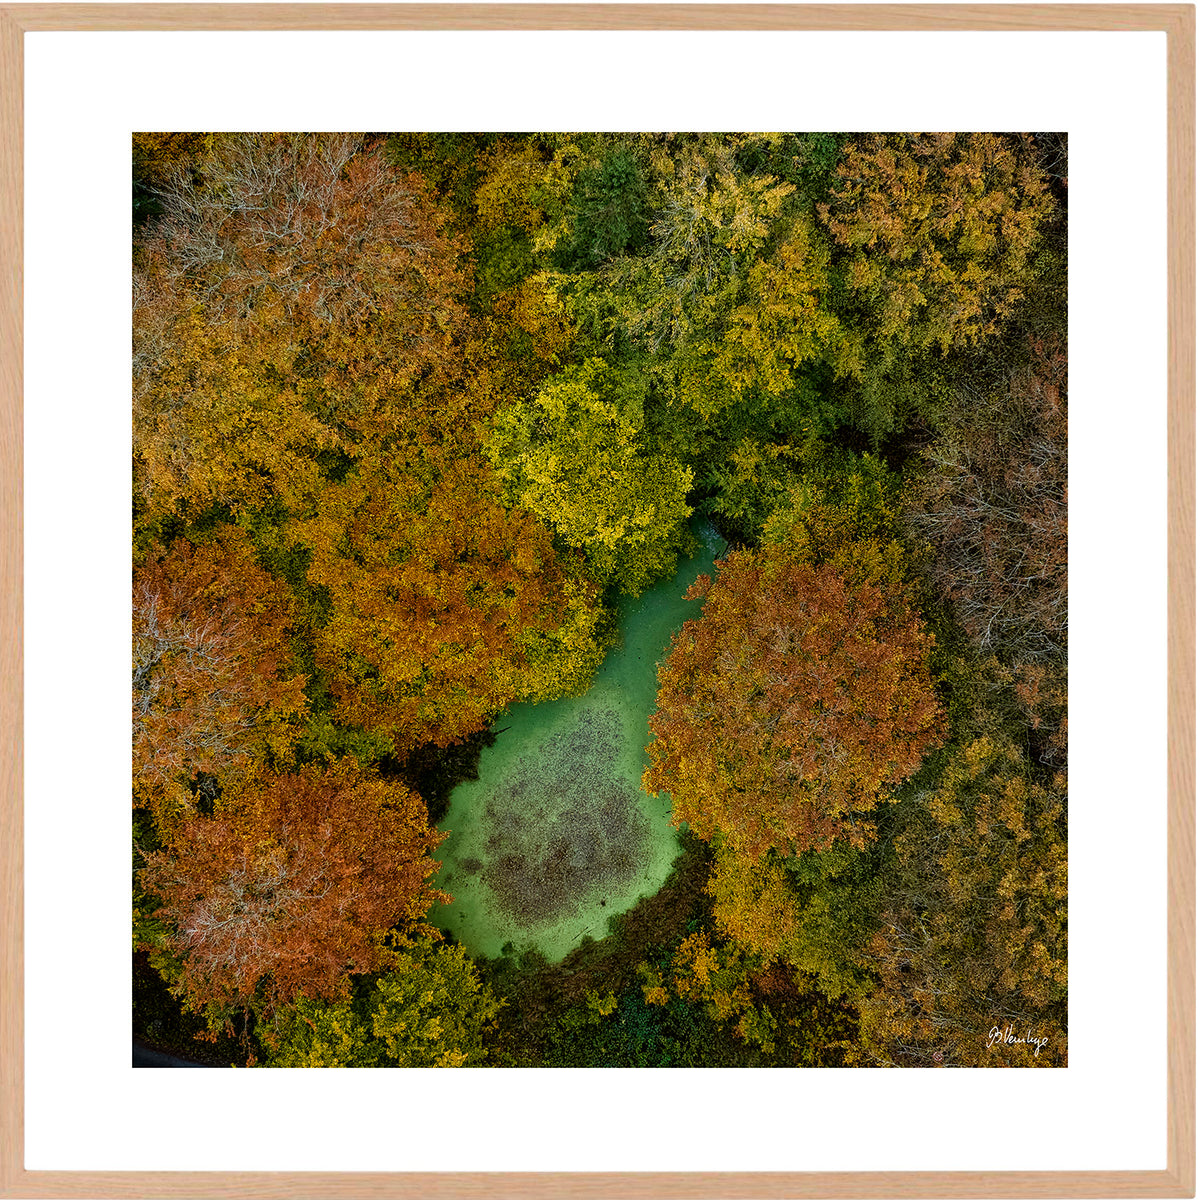 I Marselisborgskoven lyser en lysegrøn skovsø op mellem efterårets røde og gule træer.